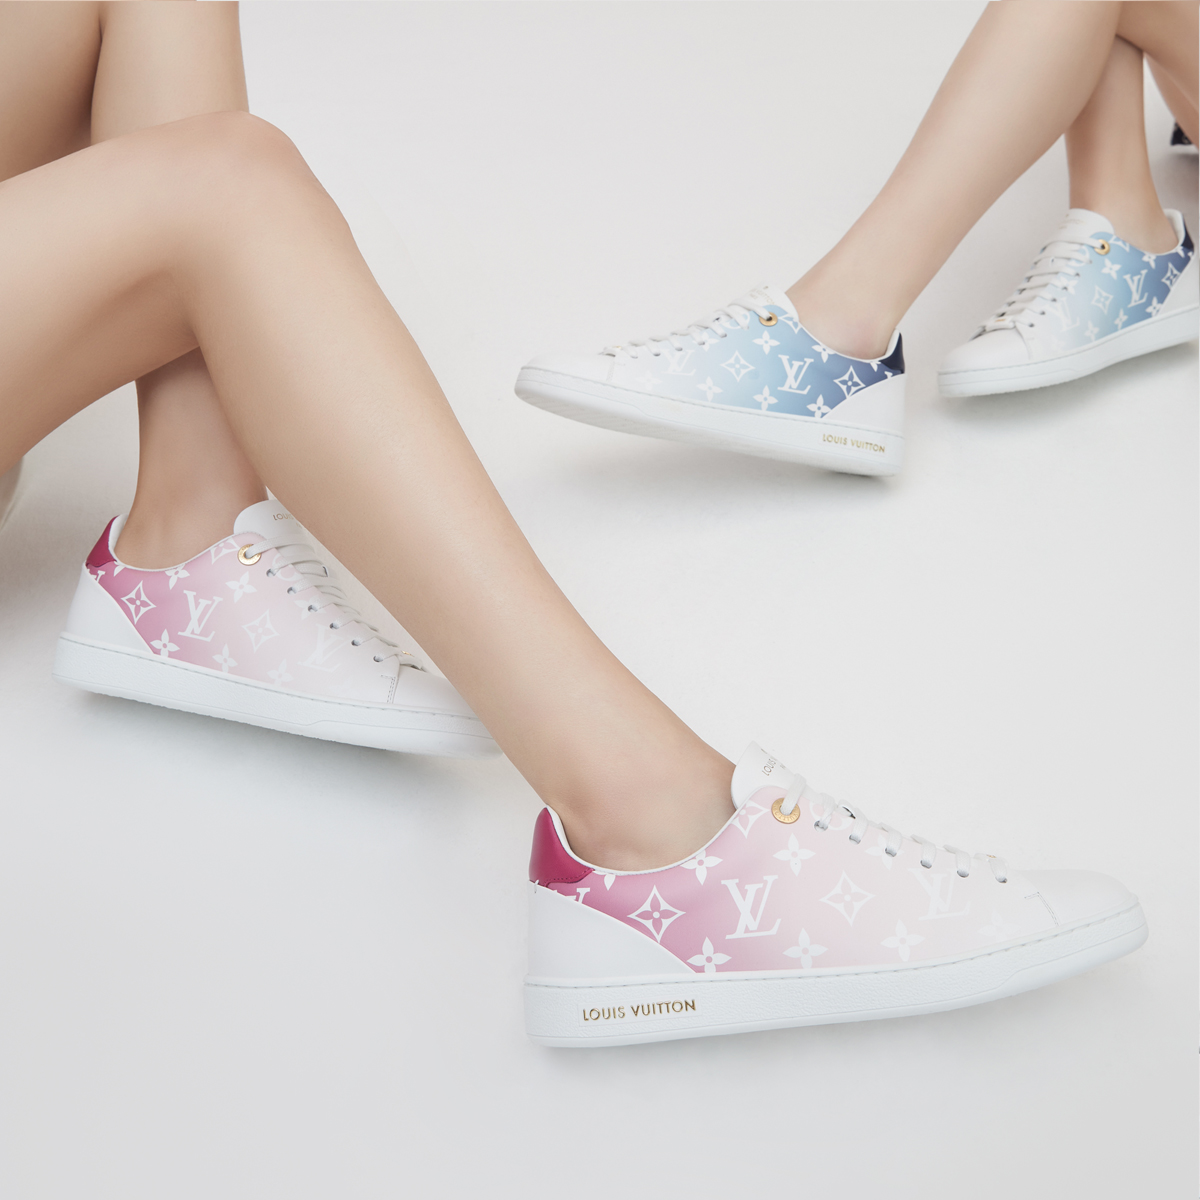 Louis Vuitton sneakers donna 2020: un'inedita combinazione di